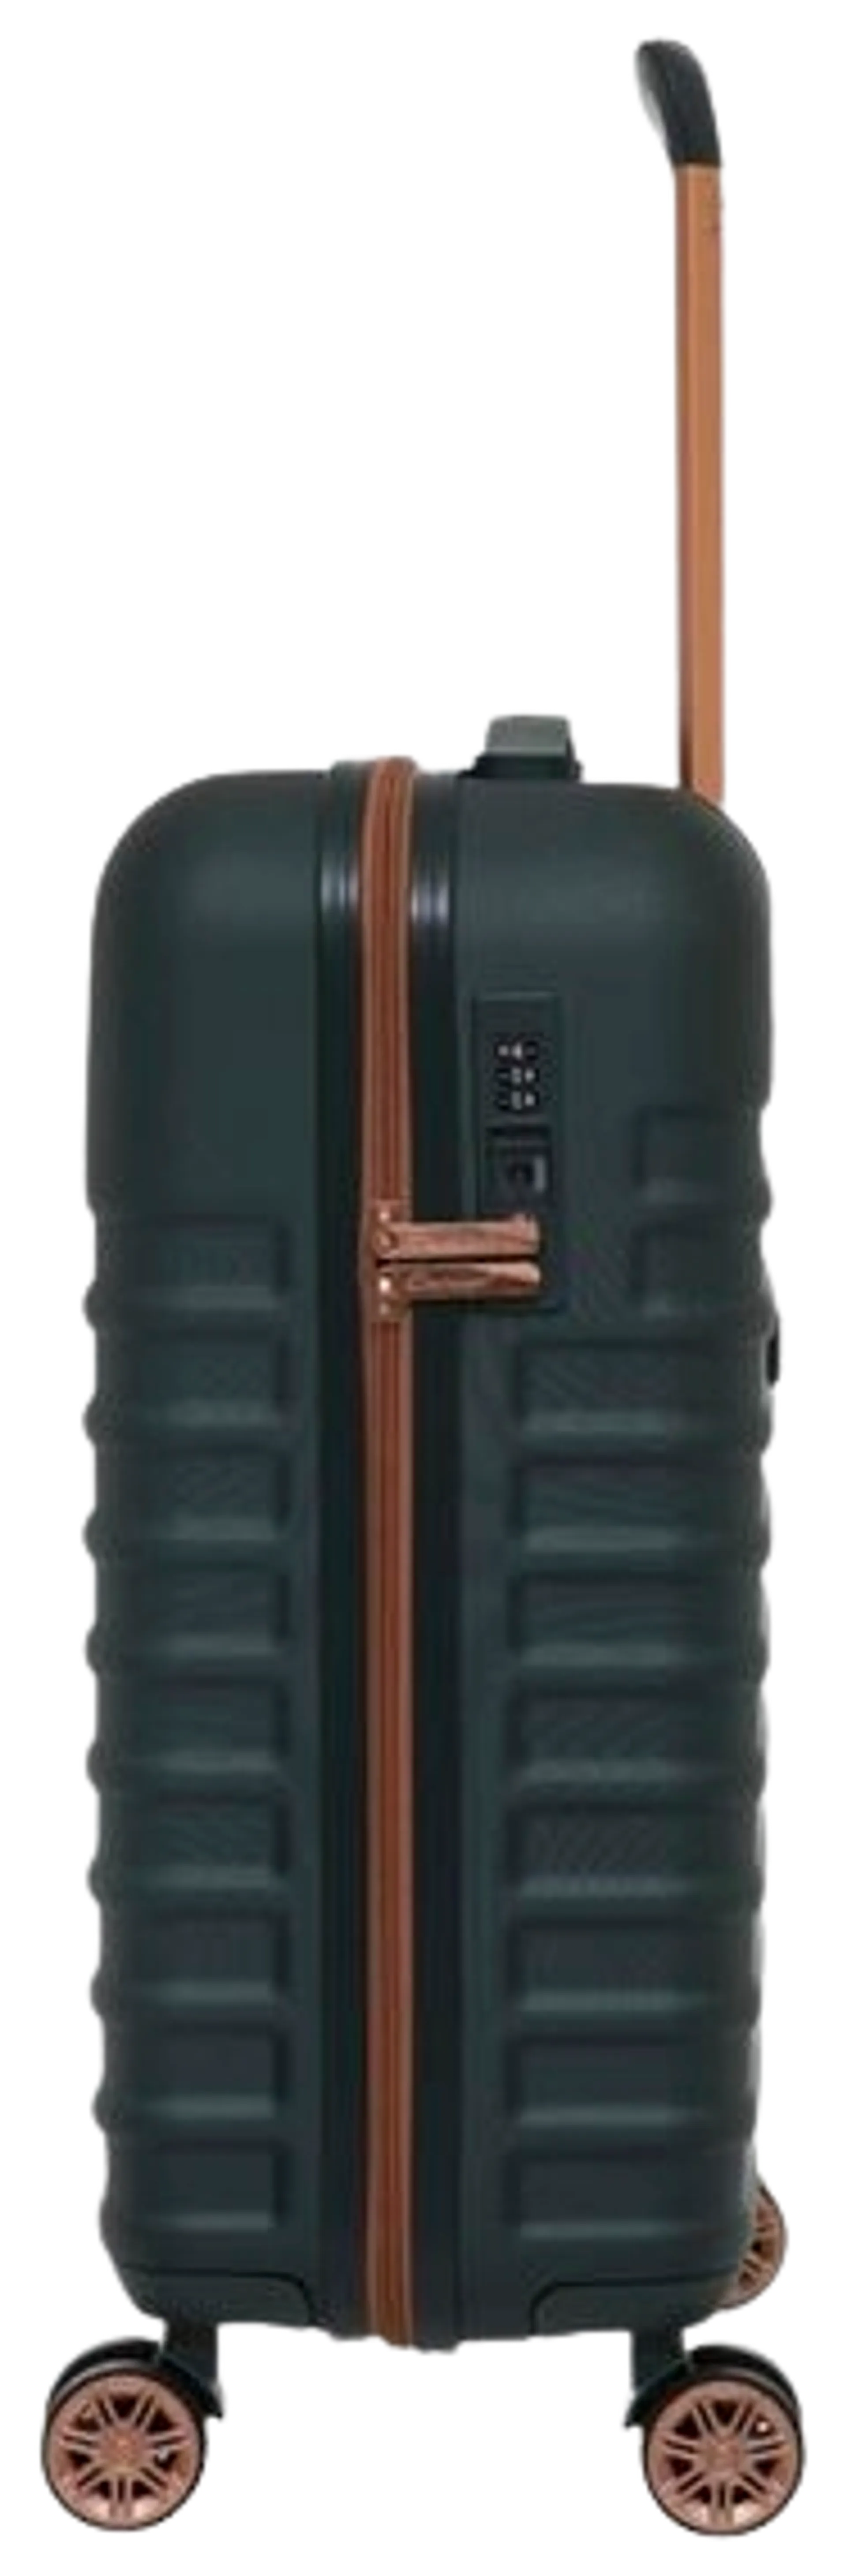 Cavalet lentolaukku Pasadena 54 cm, vihreä - 2